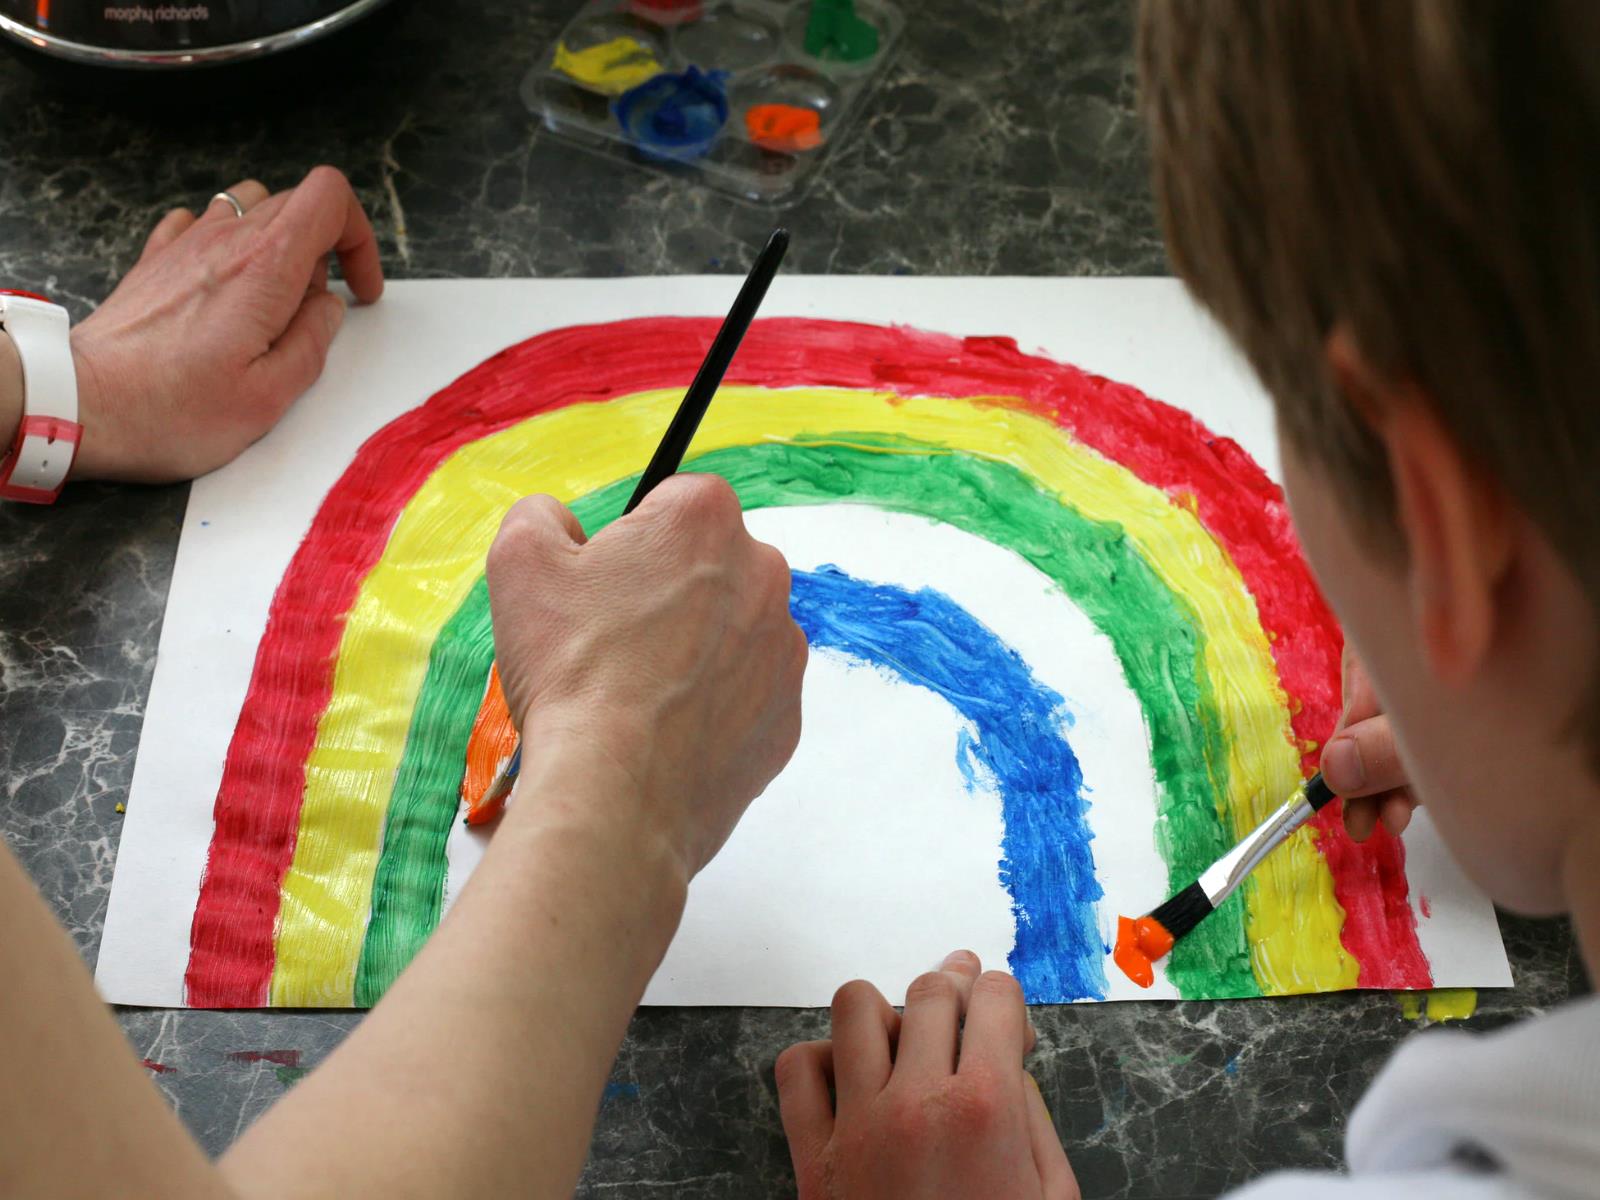 Erwachener und Kind malen regenbogen mit Wasserfarben